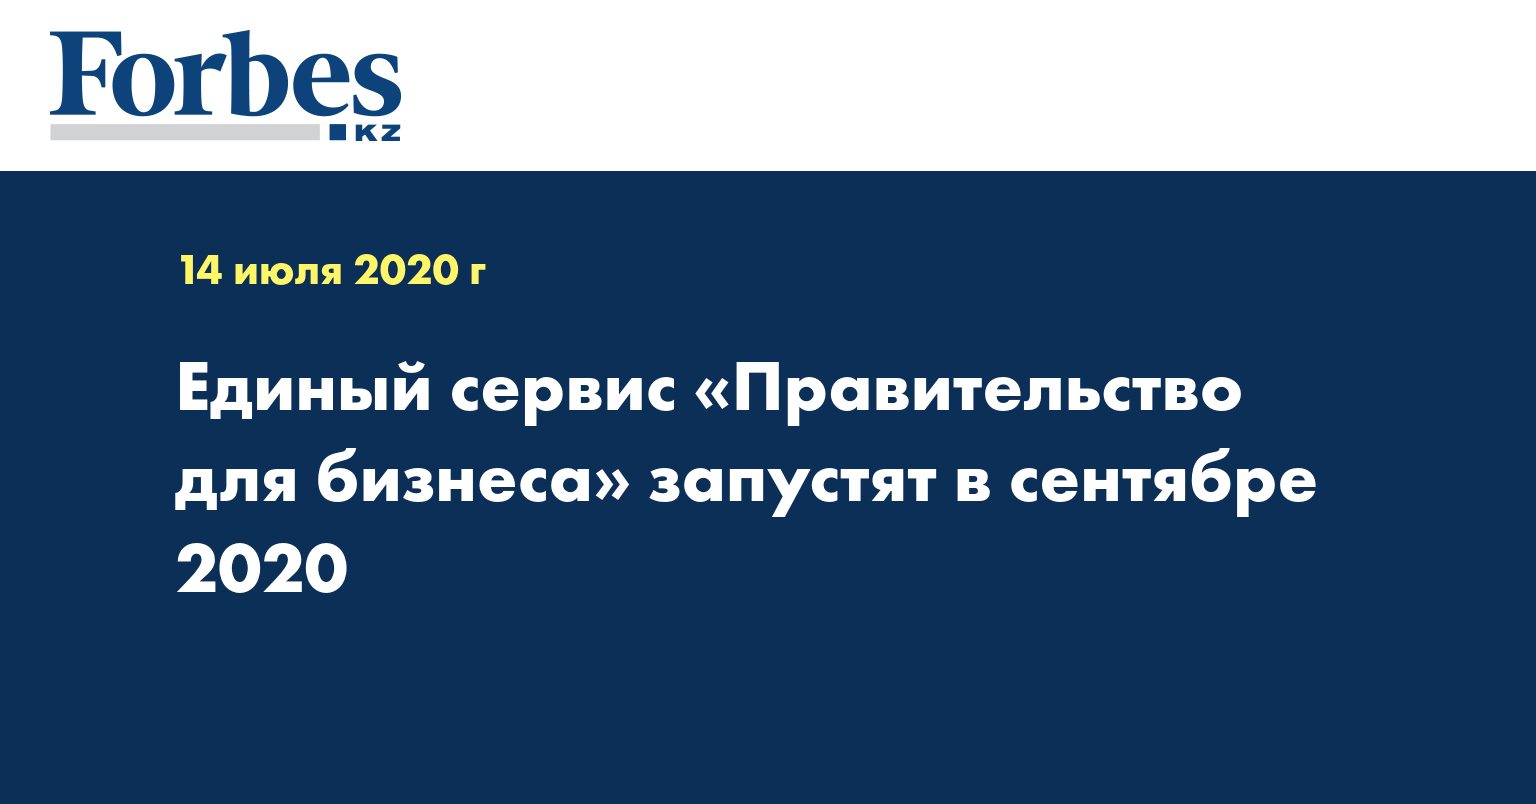  Единый сервис «Правительство для бизнеса» запустят в сентябре 2020 